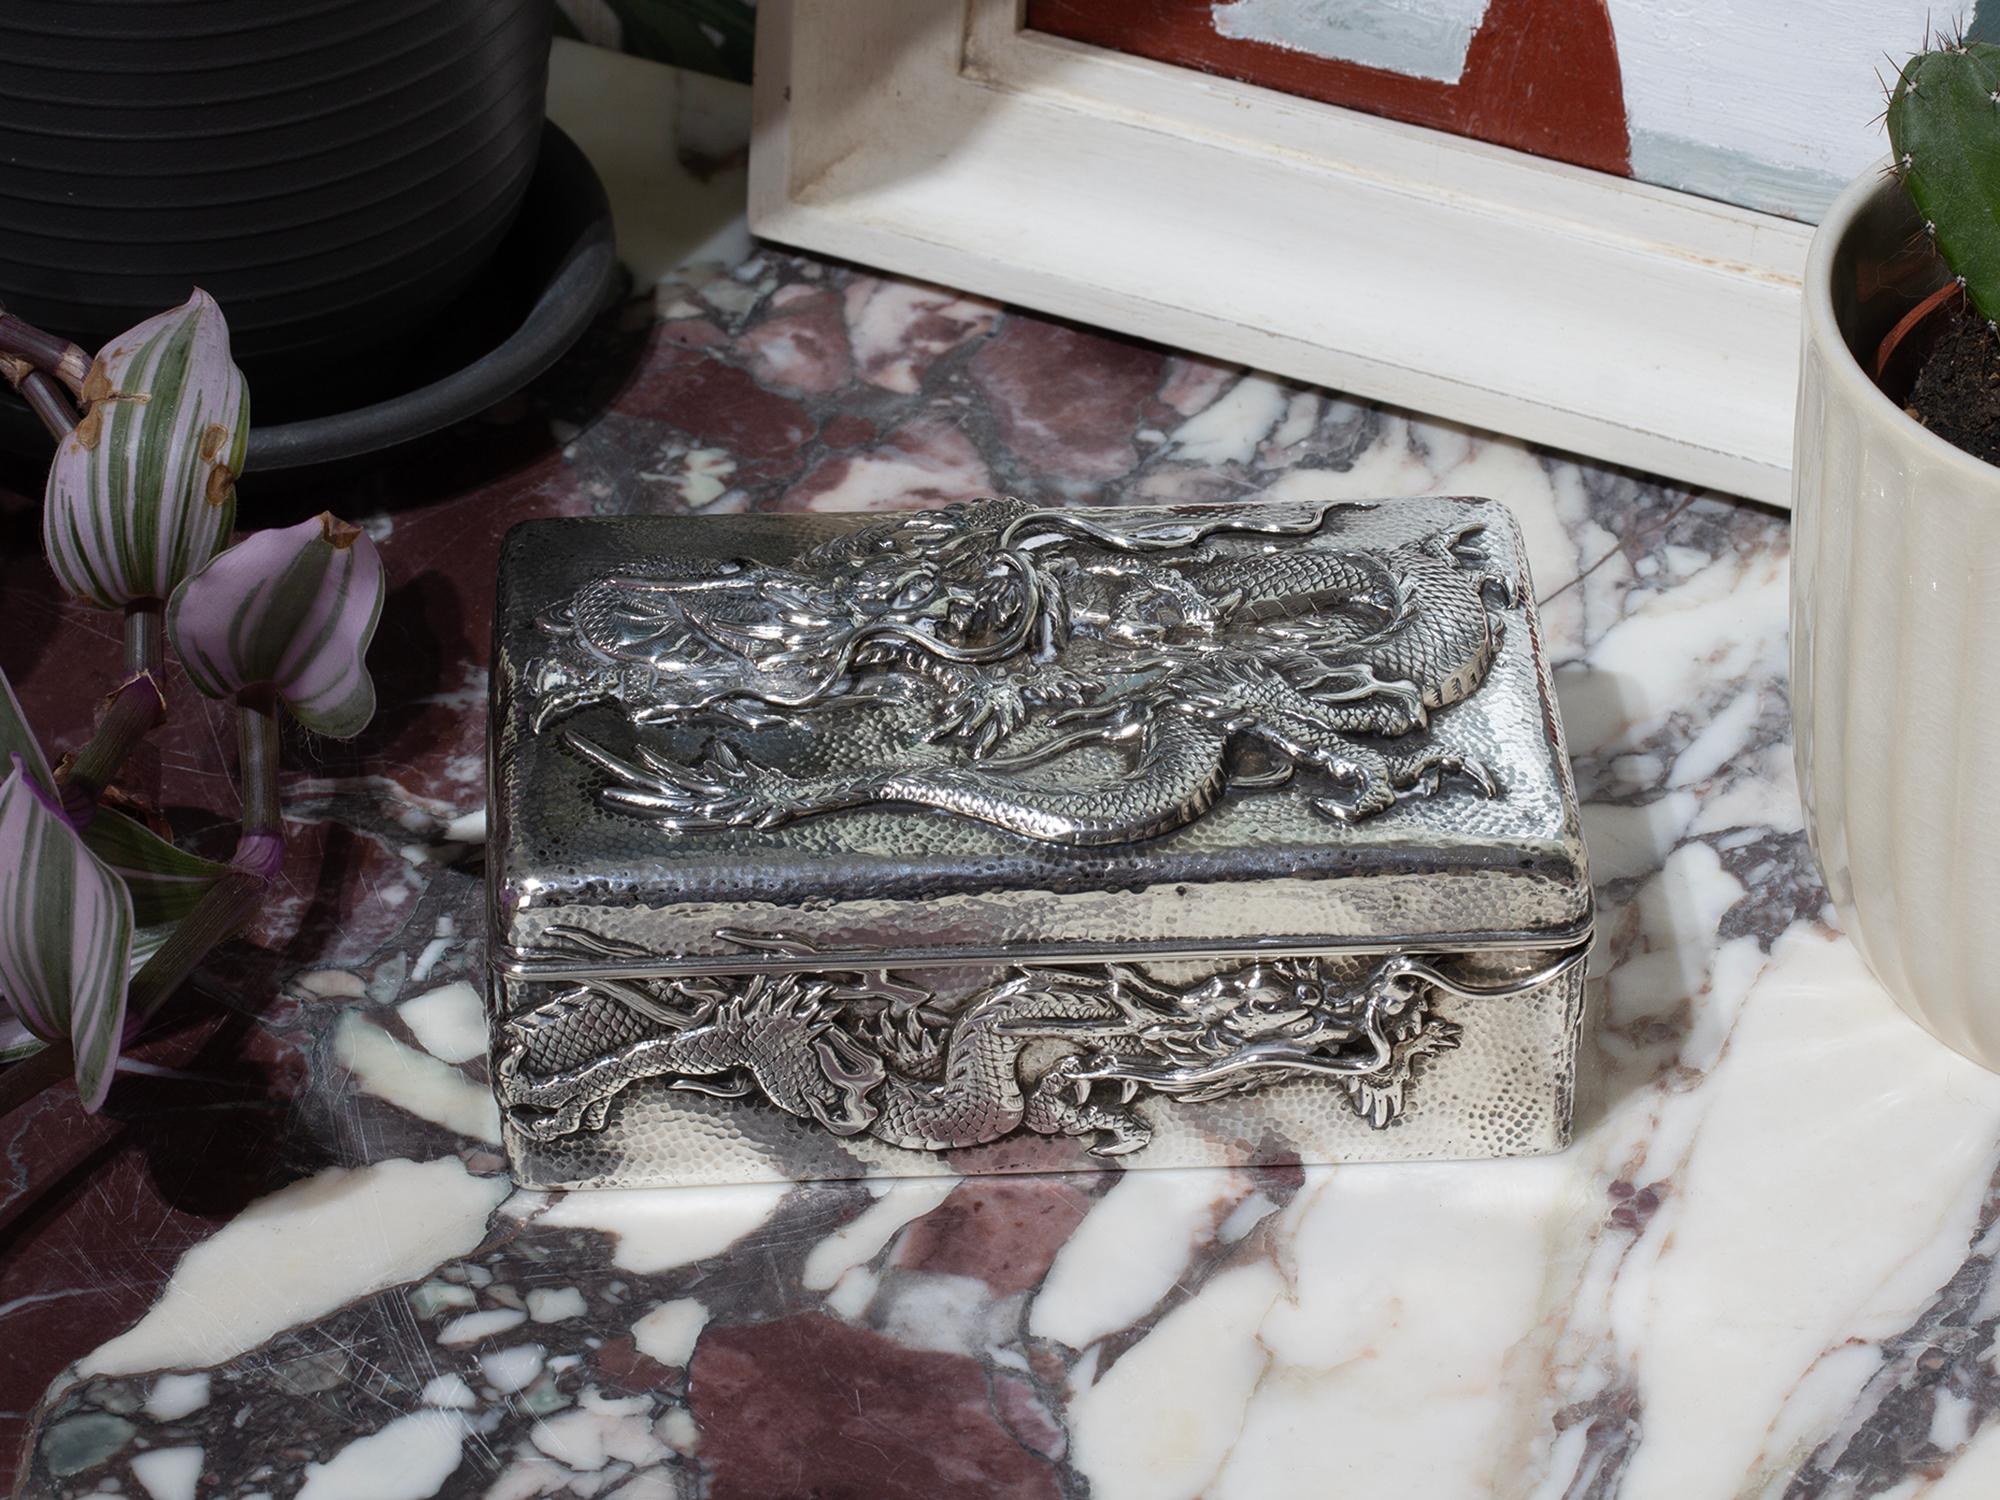 Gehämmertes Silber Dekoration gestempelt Jungin reinem Silber 純銀

Wir freuen uns, Ihnen aus unserer japanischen Sammlung eine japanische Dose mit einem silbernen Drachen aus der Meiji-Zeit anbieten zu können. Die Dose mit rechteckiger Form ist aus